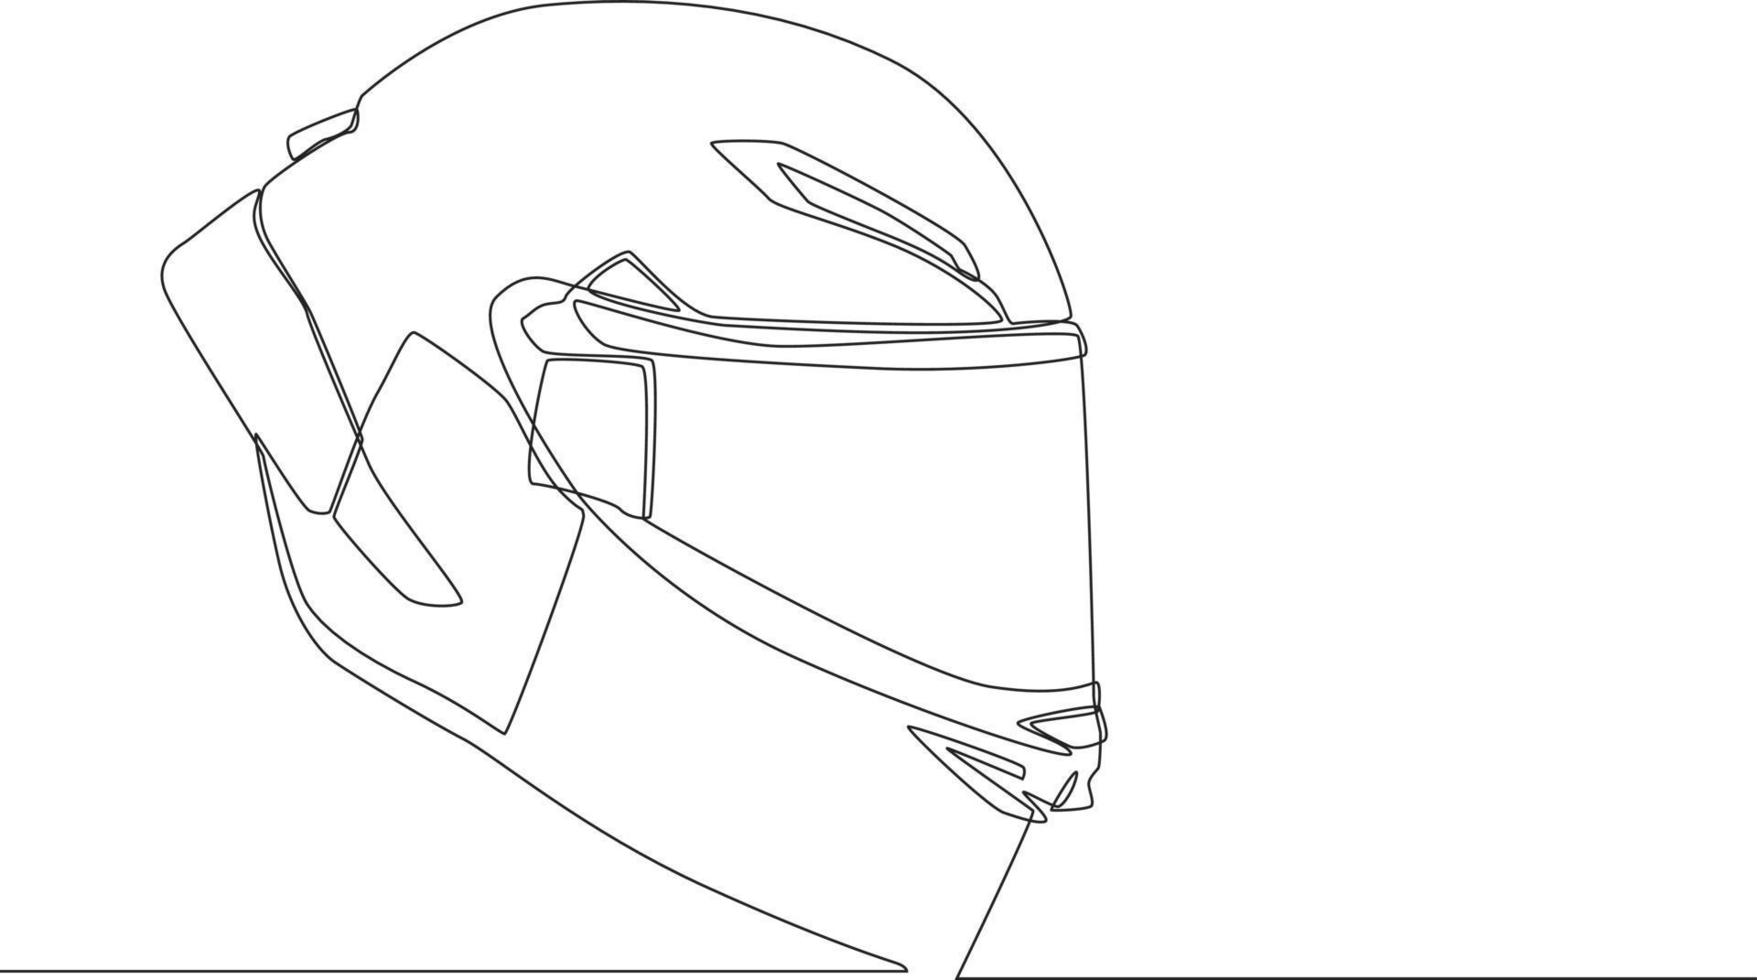 durchgehende einzeilige zeichnung helm fullface linie oder motorradhelm. einzeiliges zeichnen design vektorgrafik illustration. vektor